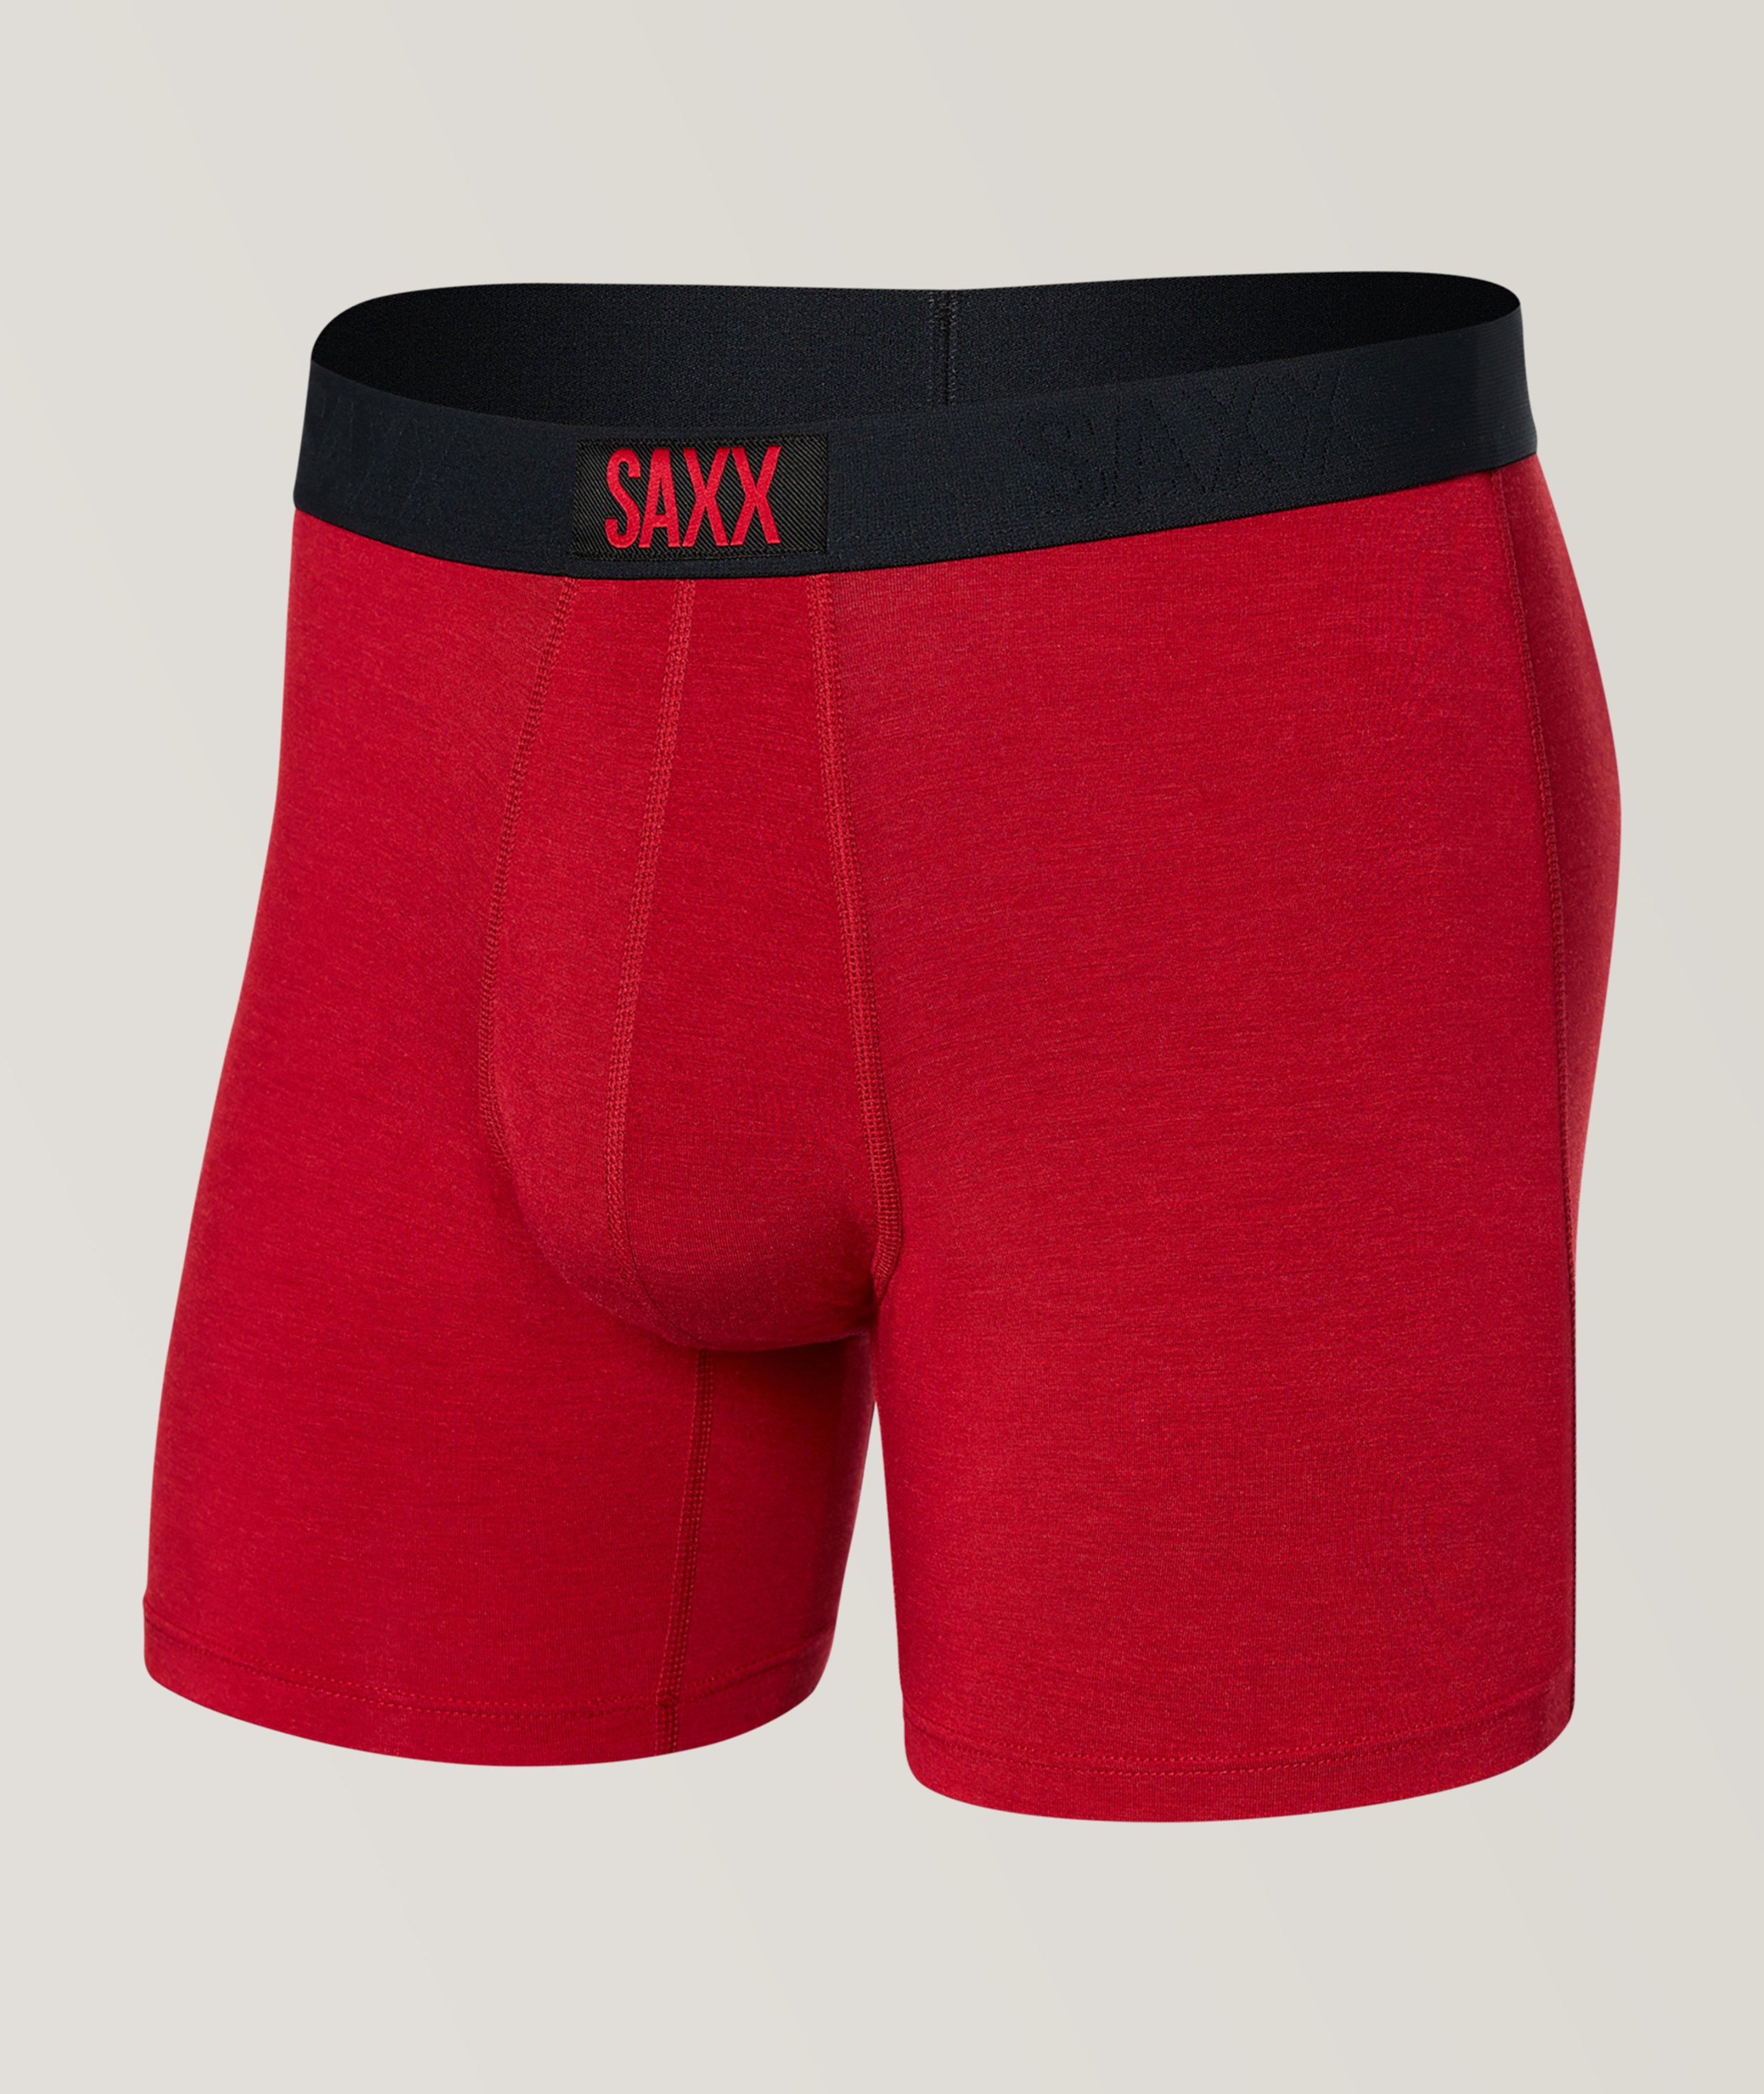 SAXX Vibe Super Soft Boxer Briefs, Underwear